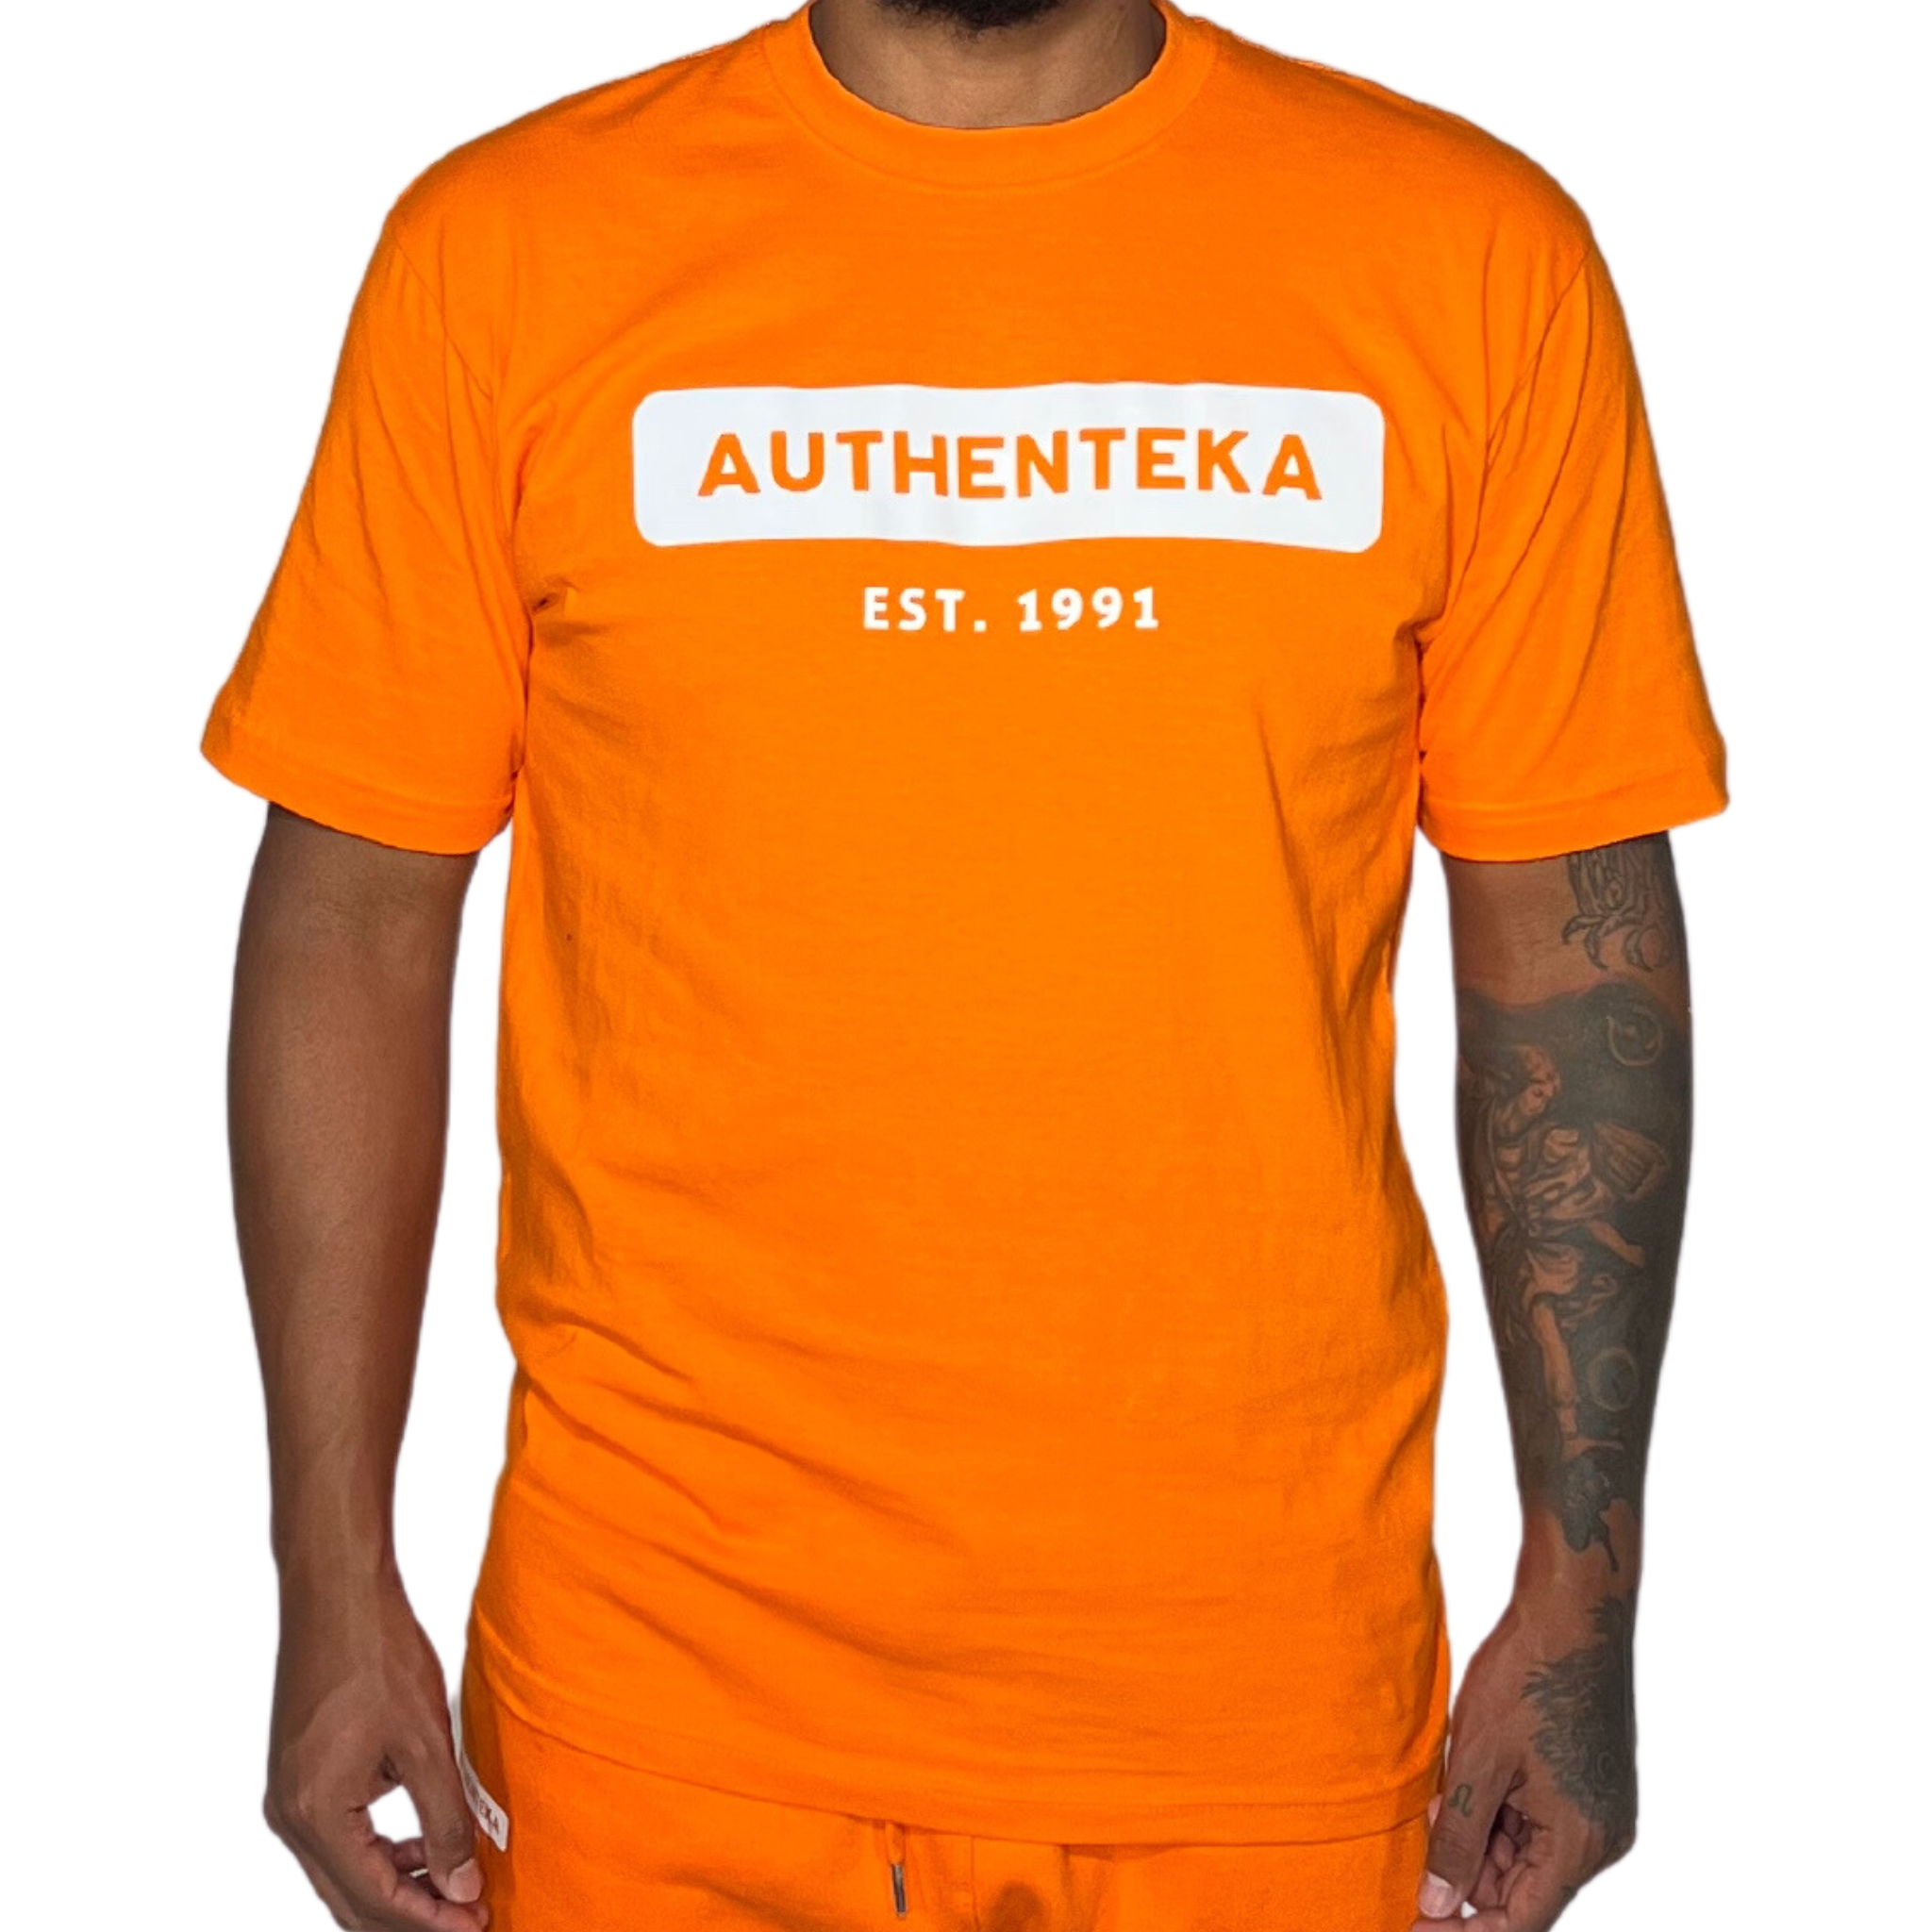 AUTHENTEKA UNISEX T-SHIRT- orange x white